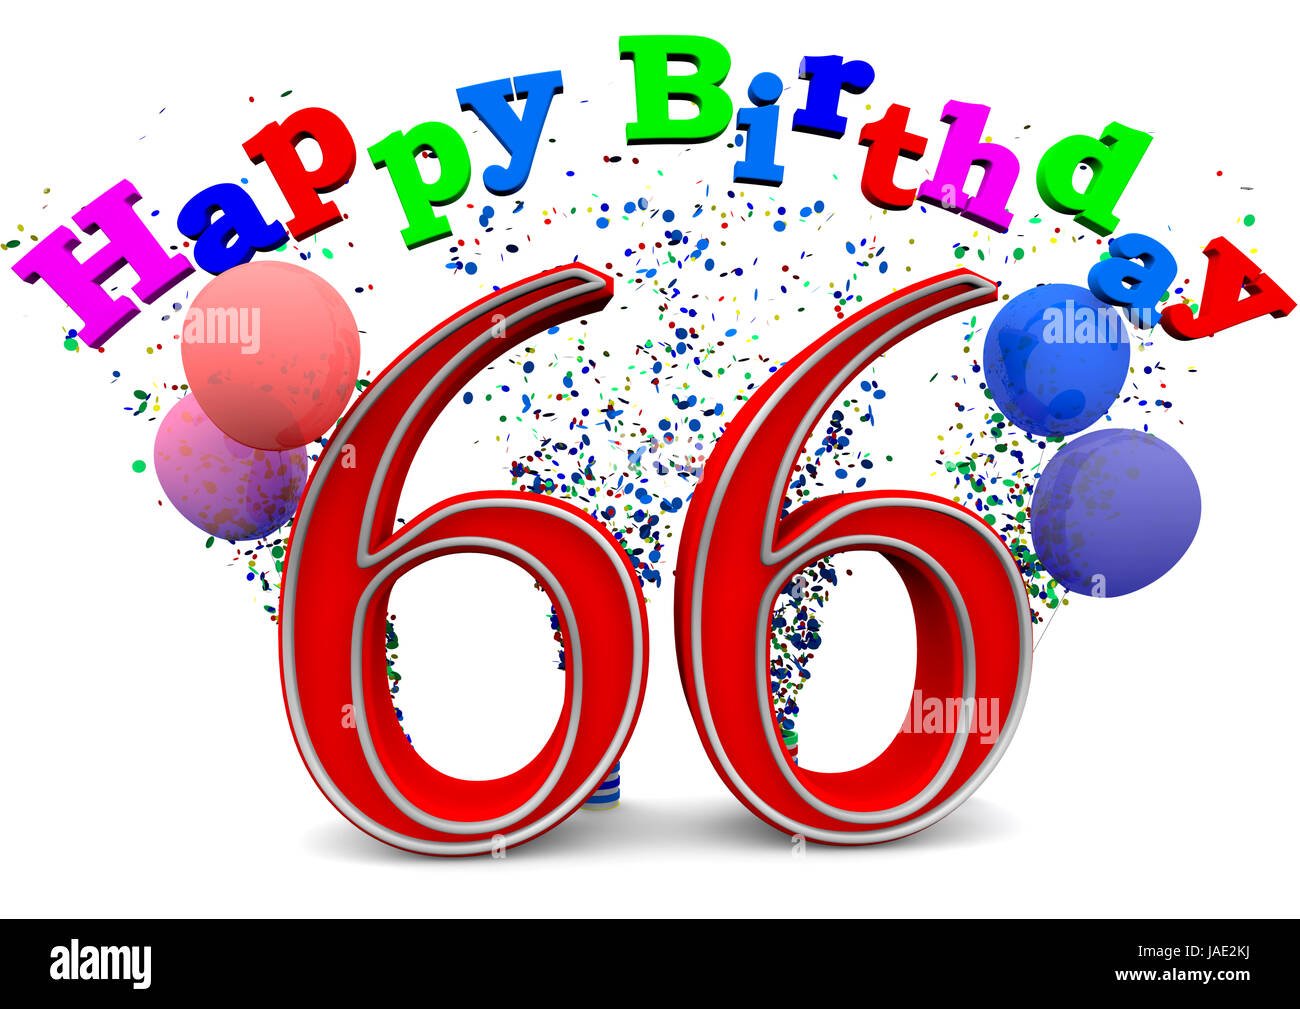 Поздравление мужчине с днем рождения 66 лет. Открытки с днем рождения 66 лет. С днём рождения мужчине 66 летием. Поздравление с днем рождения 66 лет. Открытка с 66 летием мужчине.